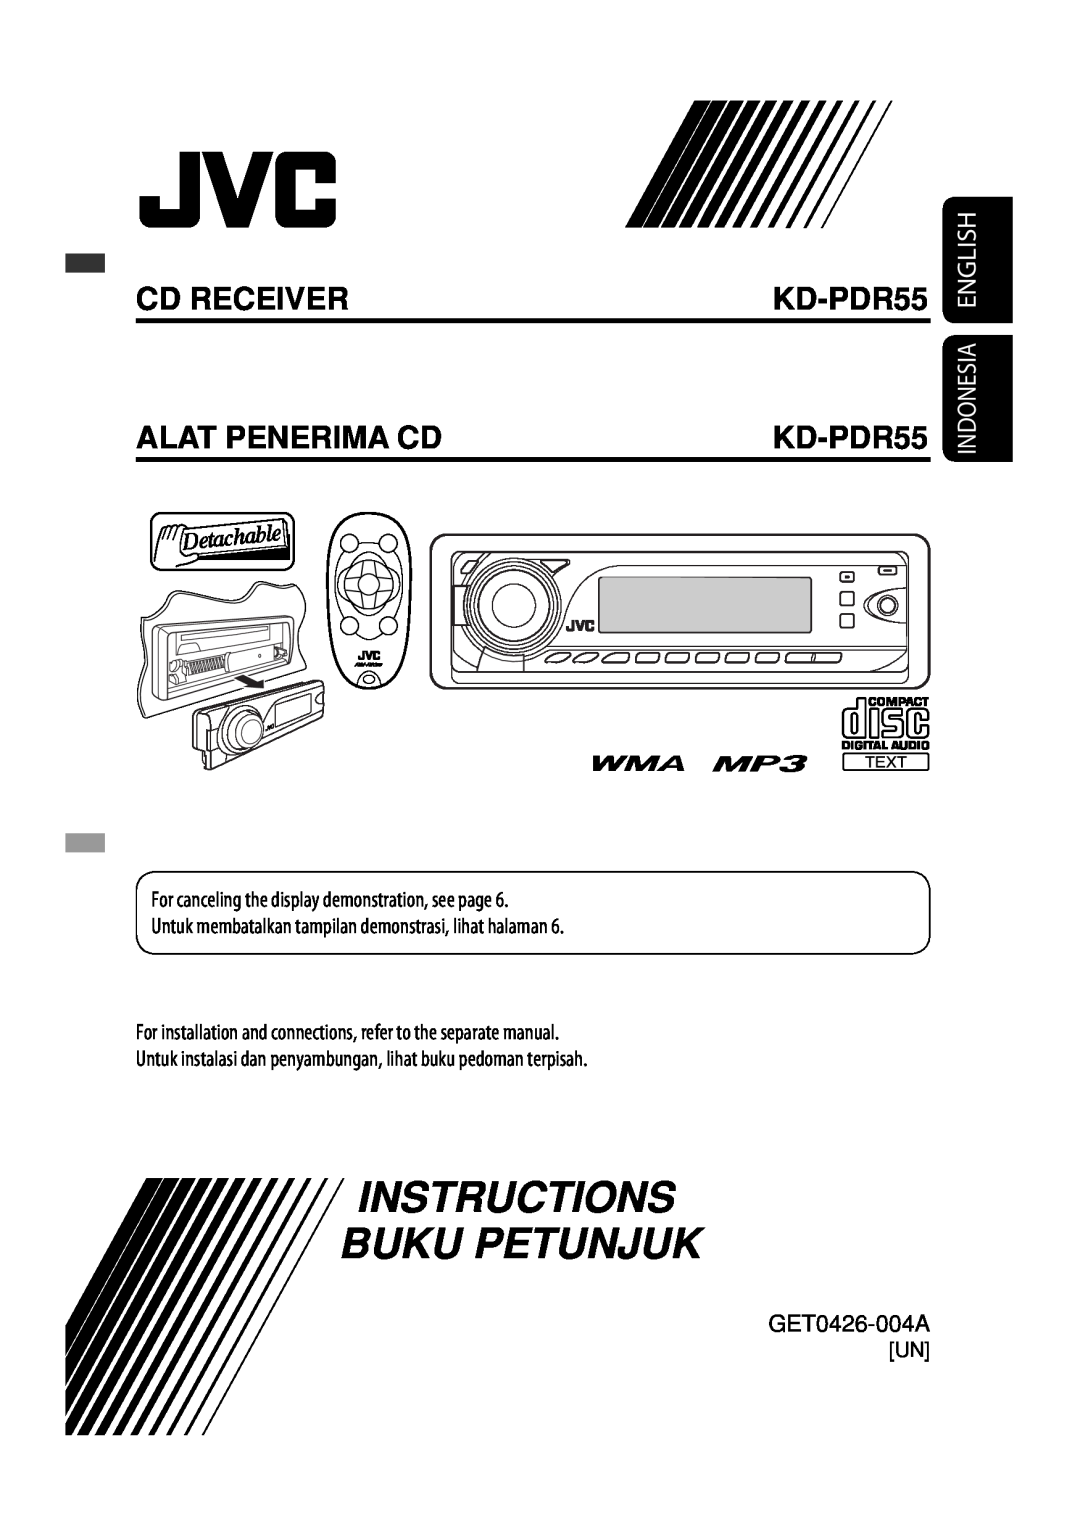 JVC GET0425-001A manual Instructions Buku Petunjuk, Cd Receiver Alat Penerima Cd, KD-PDR55 KD-PDR55, Indonesia English 